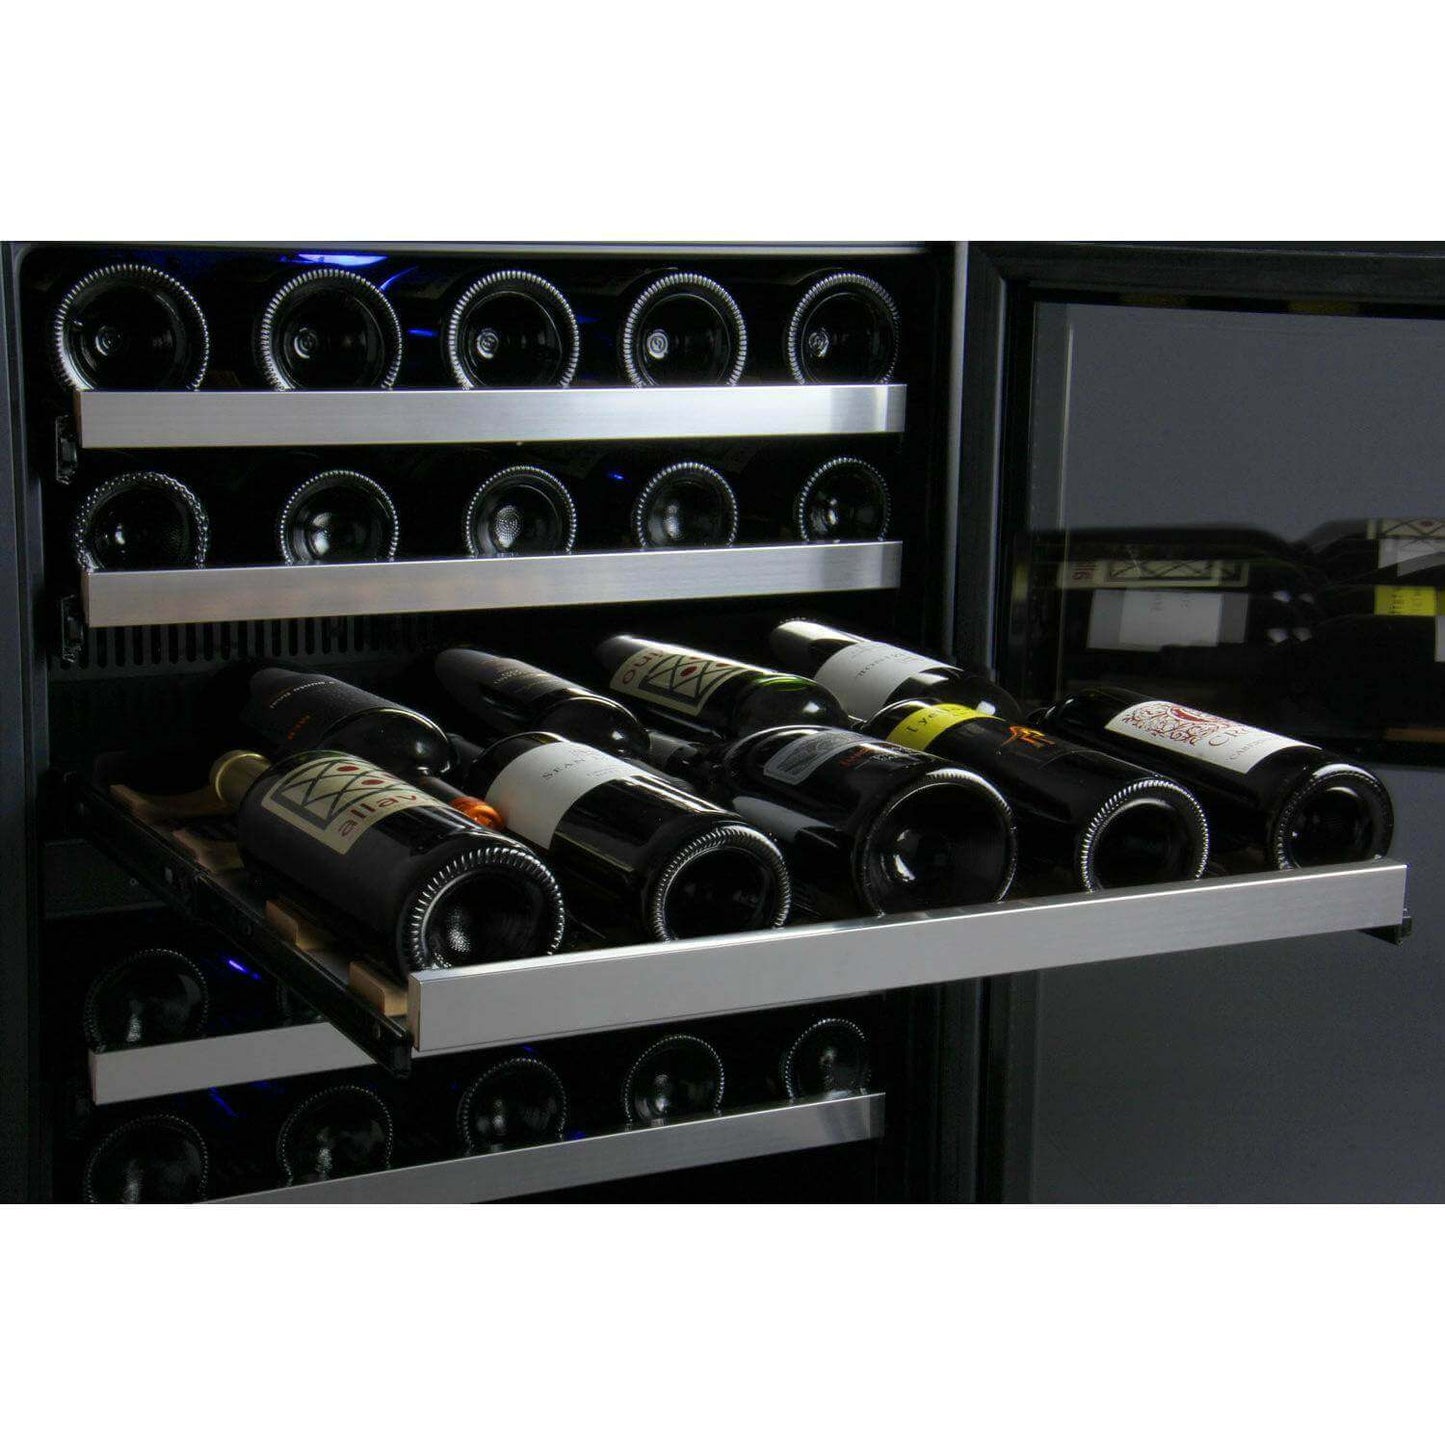 Allavino 47" Wide FlexCount II Tru-Vino 112 Bottle Four Zone Stainless Steel Side-by-Side Wine Refrigerator